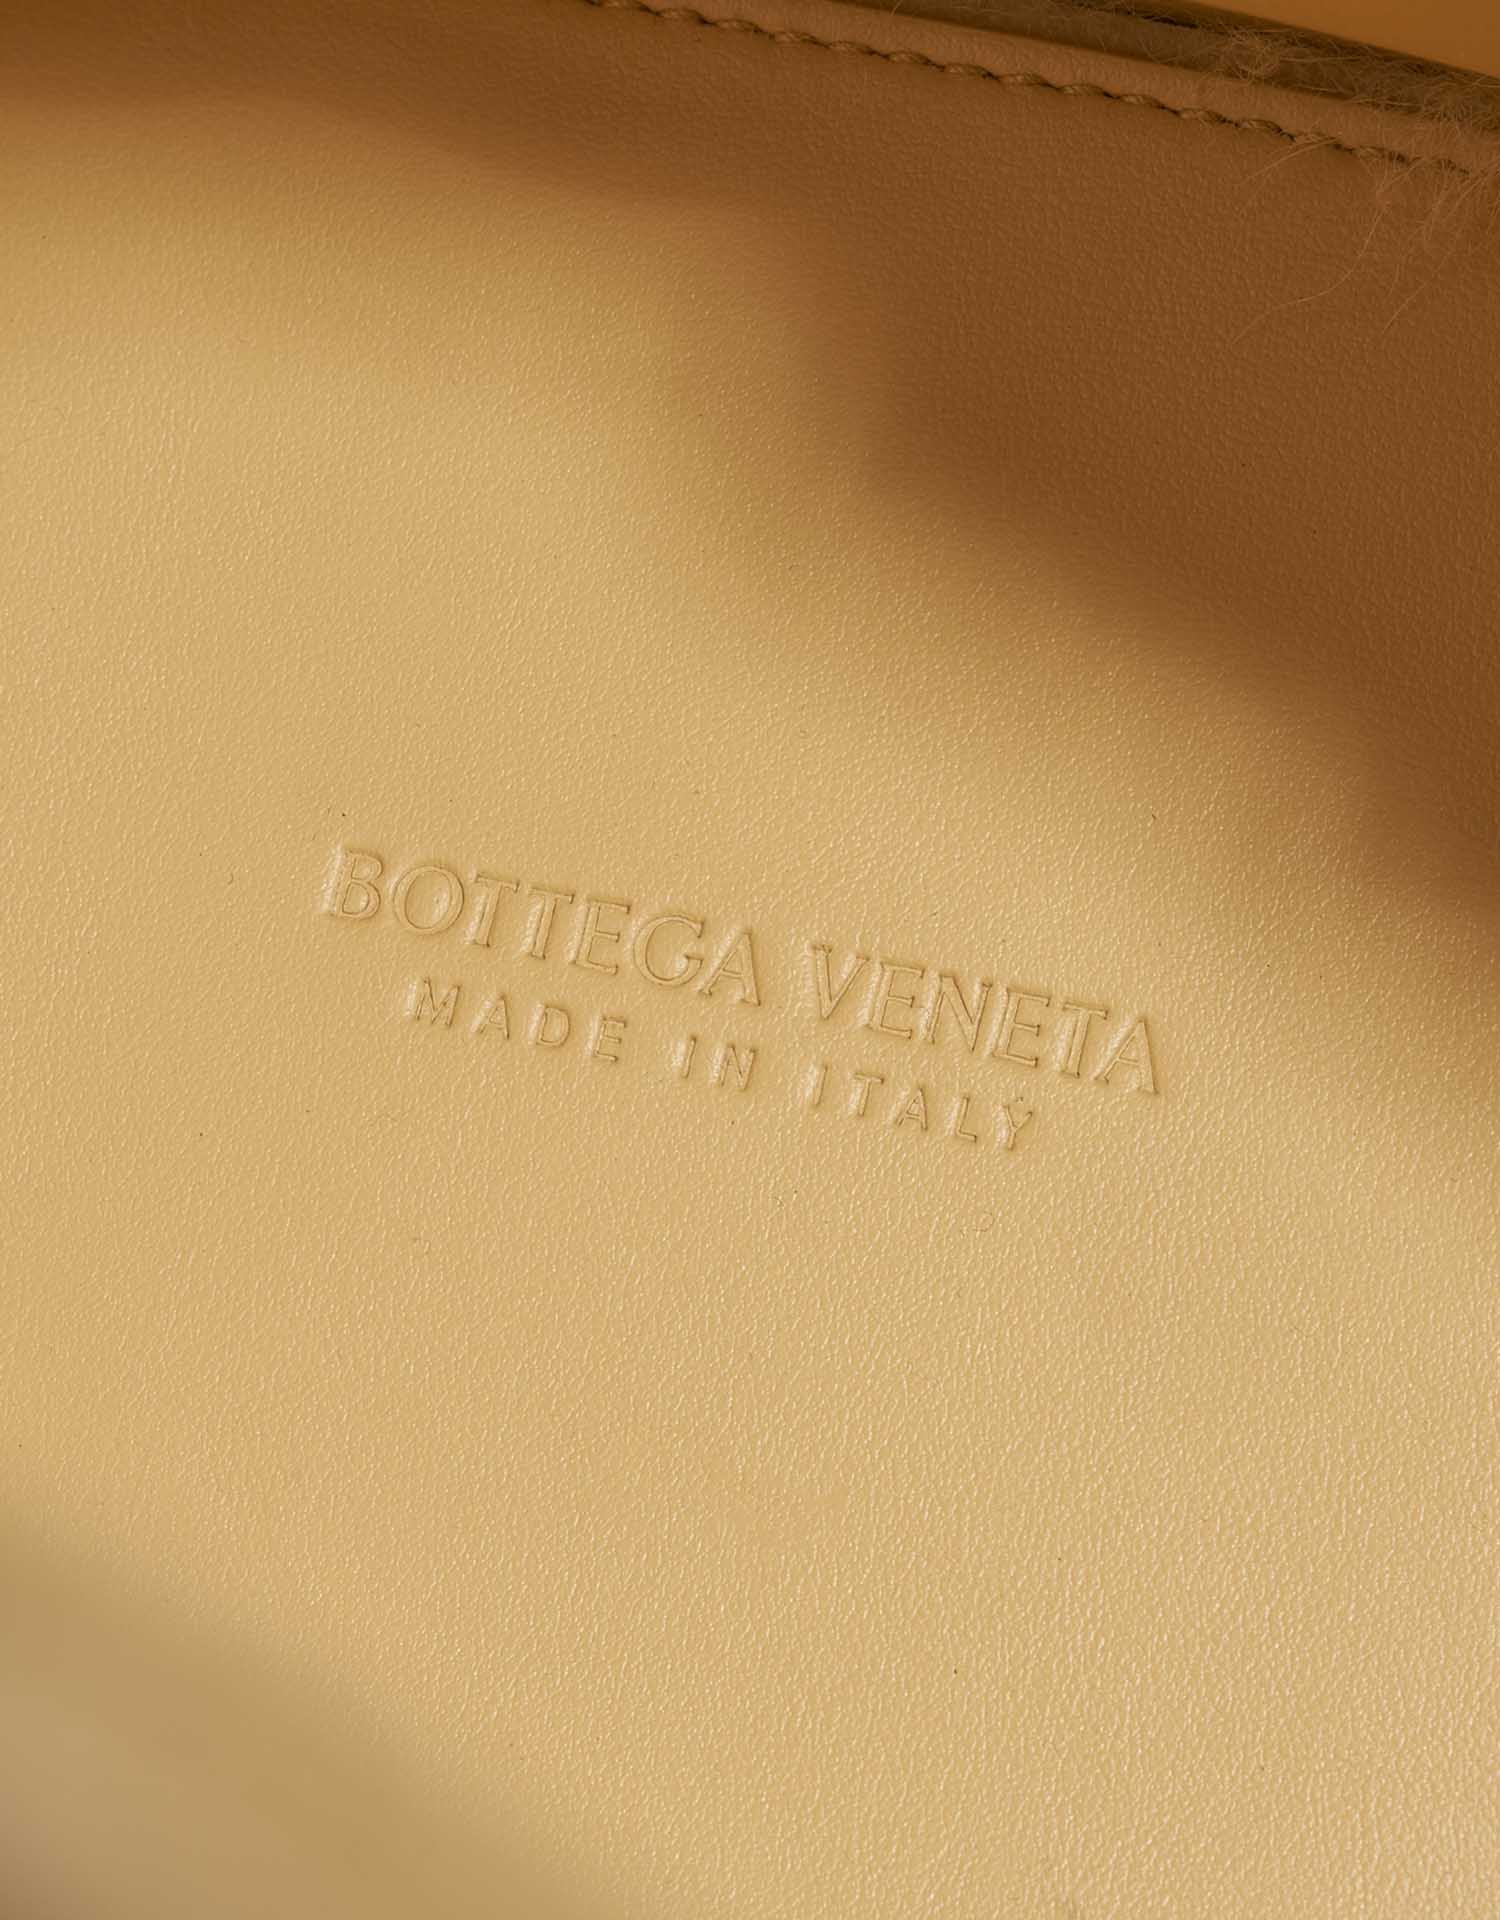 BottegaVeneta Tote Medium TeddyGold Logo | Verkaufen Sie Ihre Designertasche auf Saclab.com